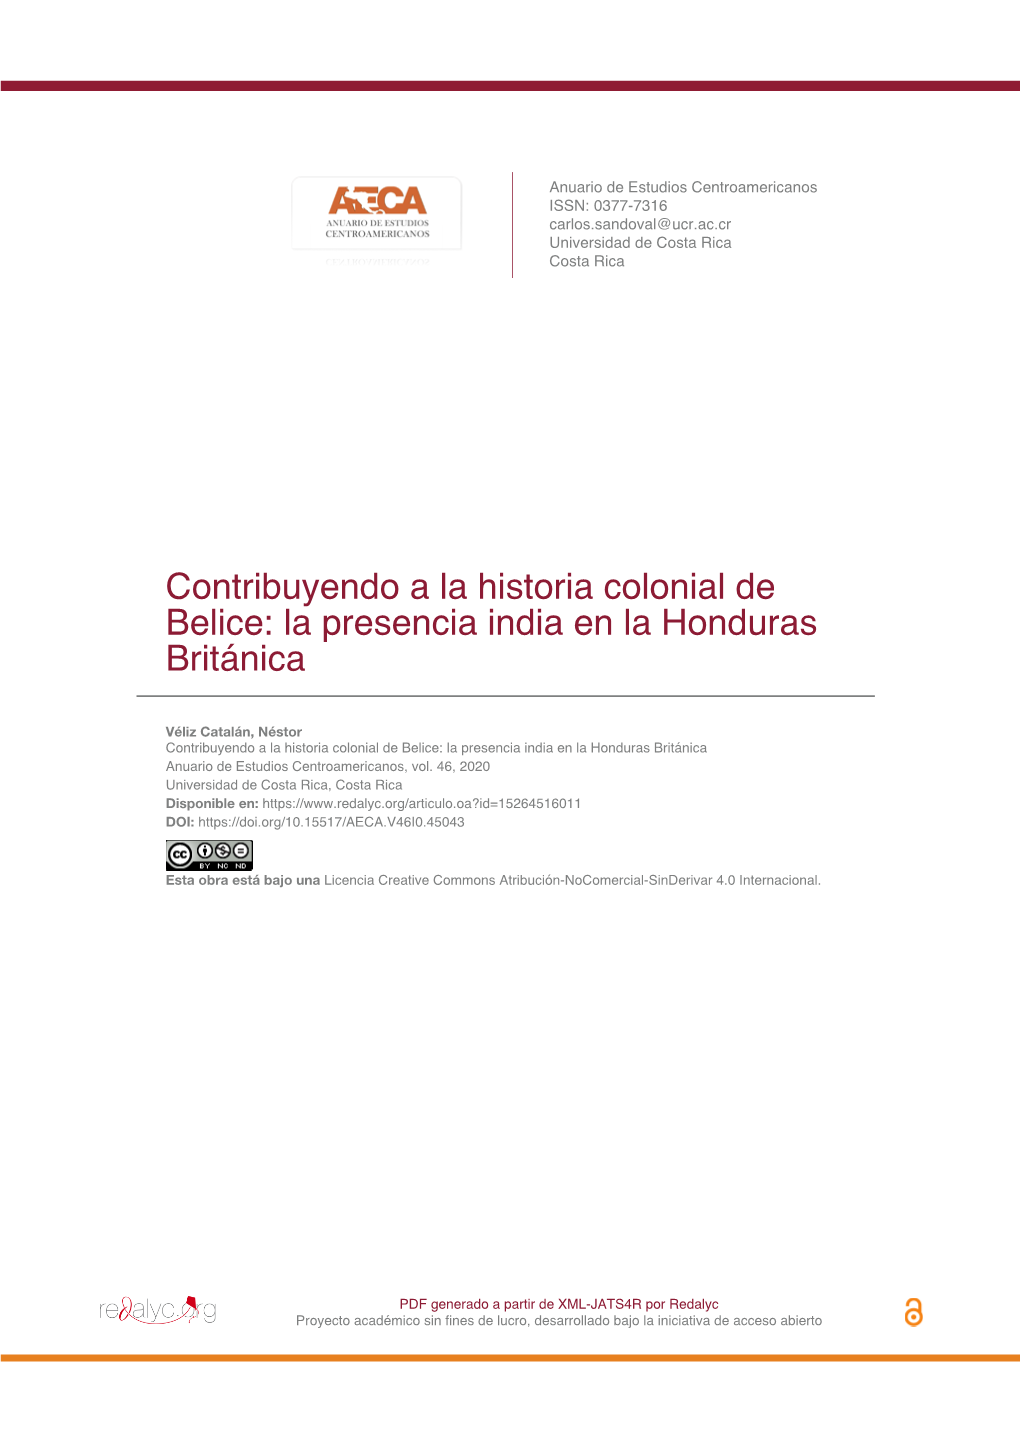 Contribuyendo a La Historia Colonial De Belice: La Presencia India En La Honduras Británica